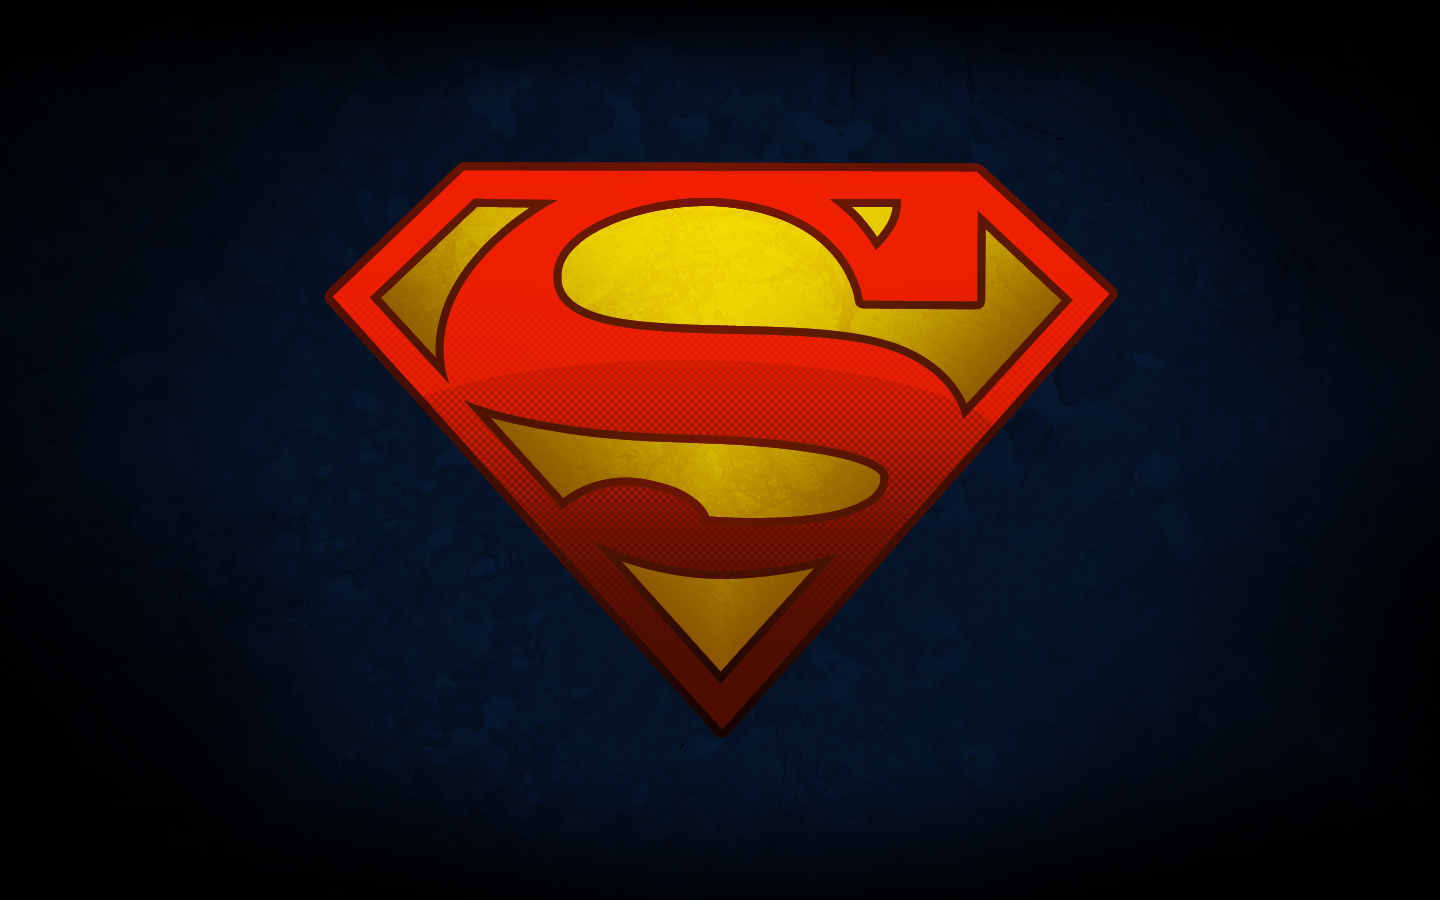 Superman Emblem Wallpapers - Wallpaper Cave